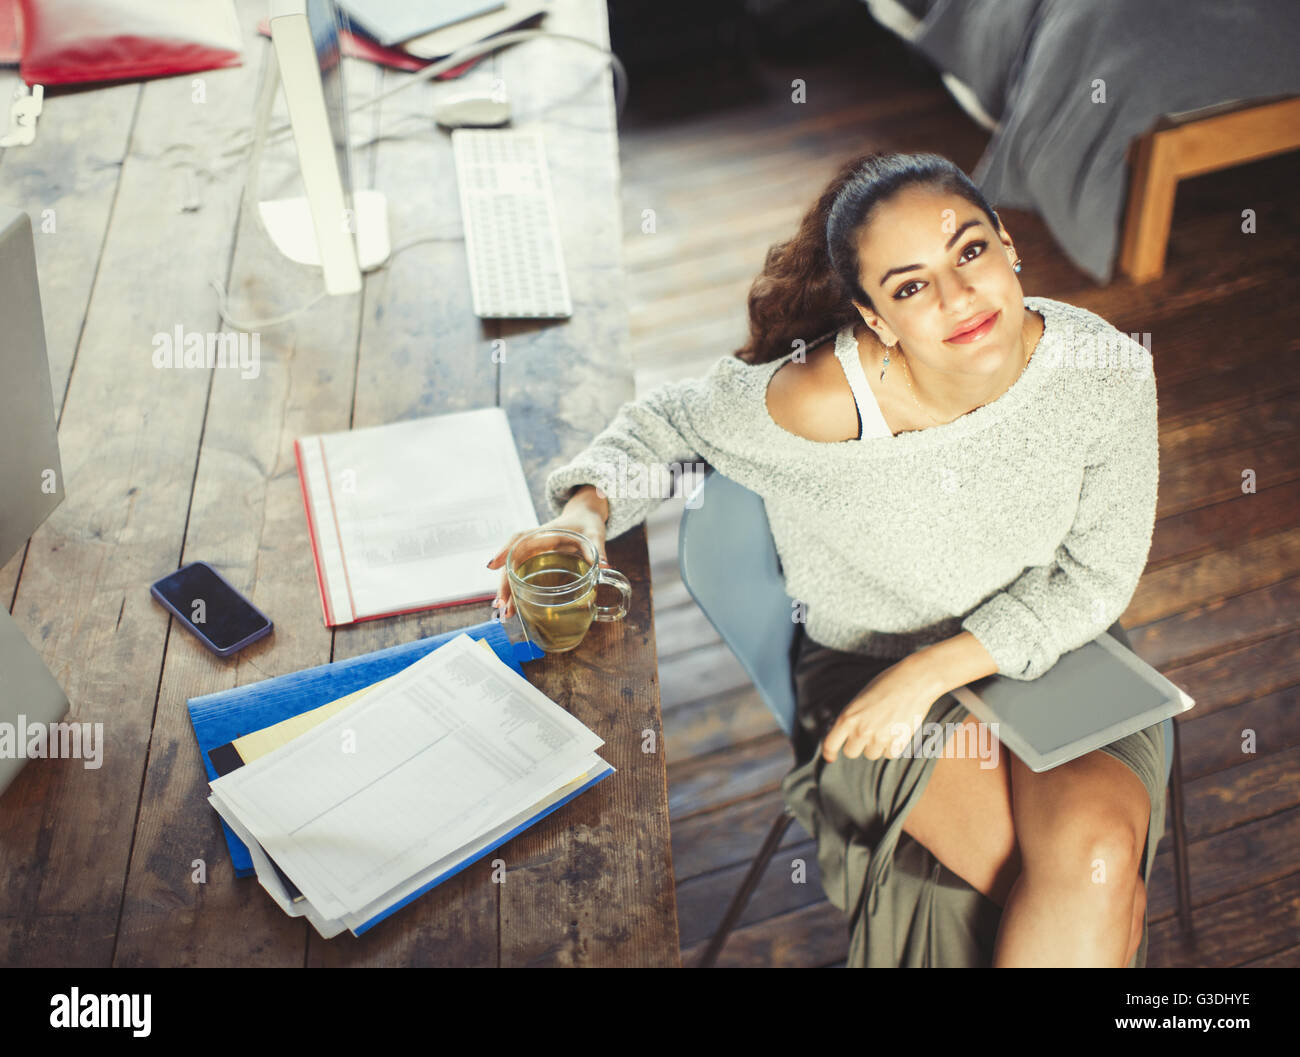 Portrait confiant college student studying avec plateau et tablette numérique Banque D'Images